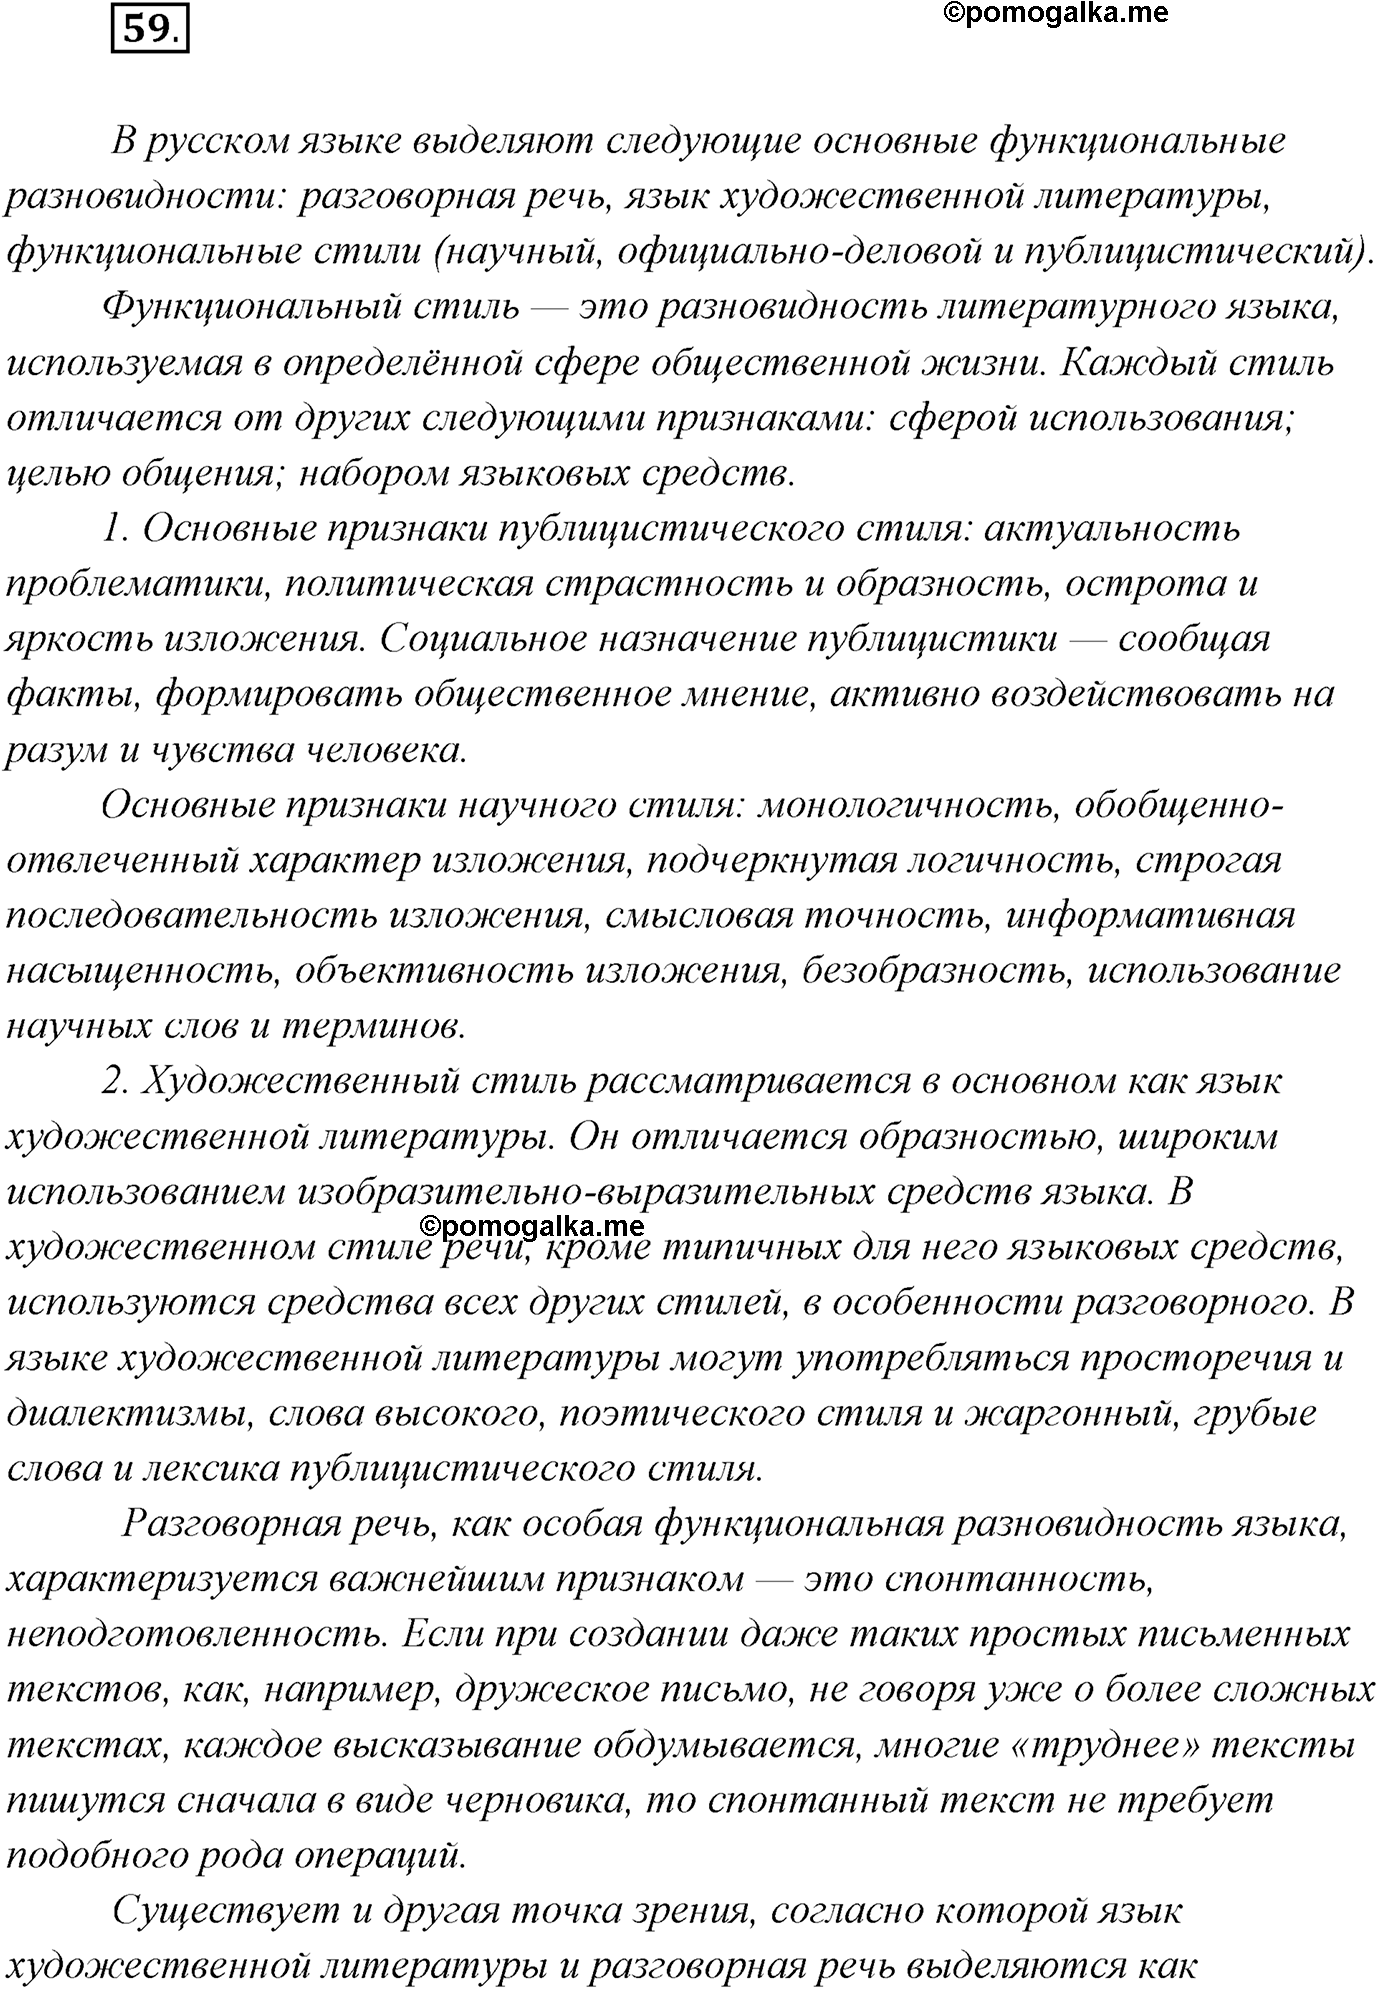 упражнение №59 русский язык 9 класс Рыбченкова, Александрова